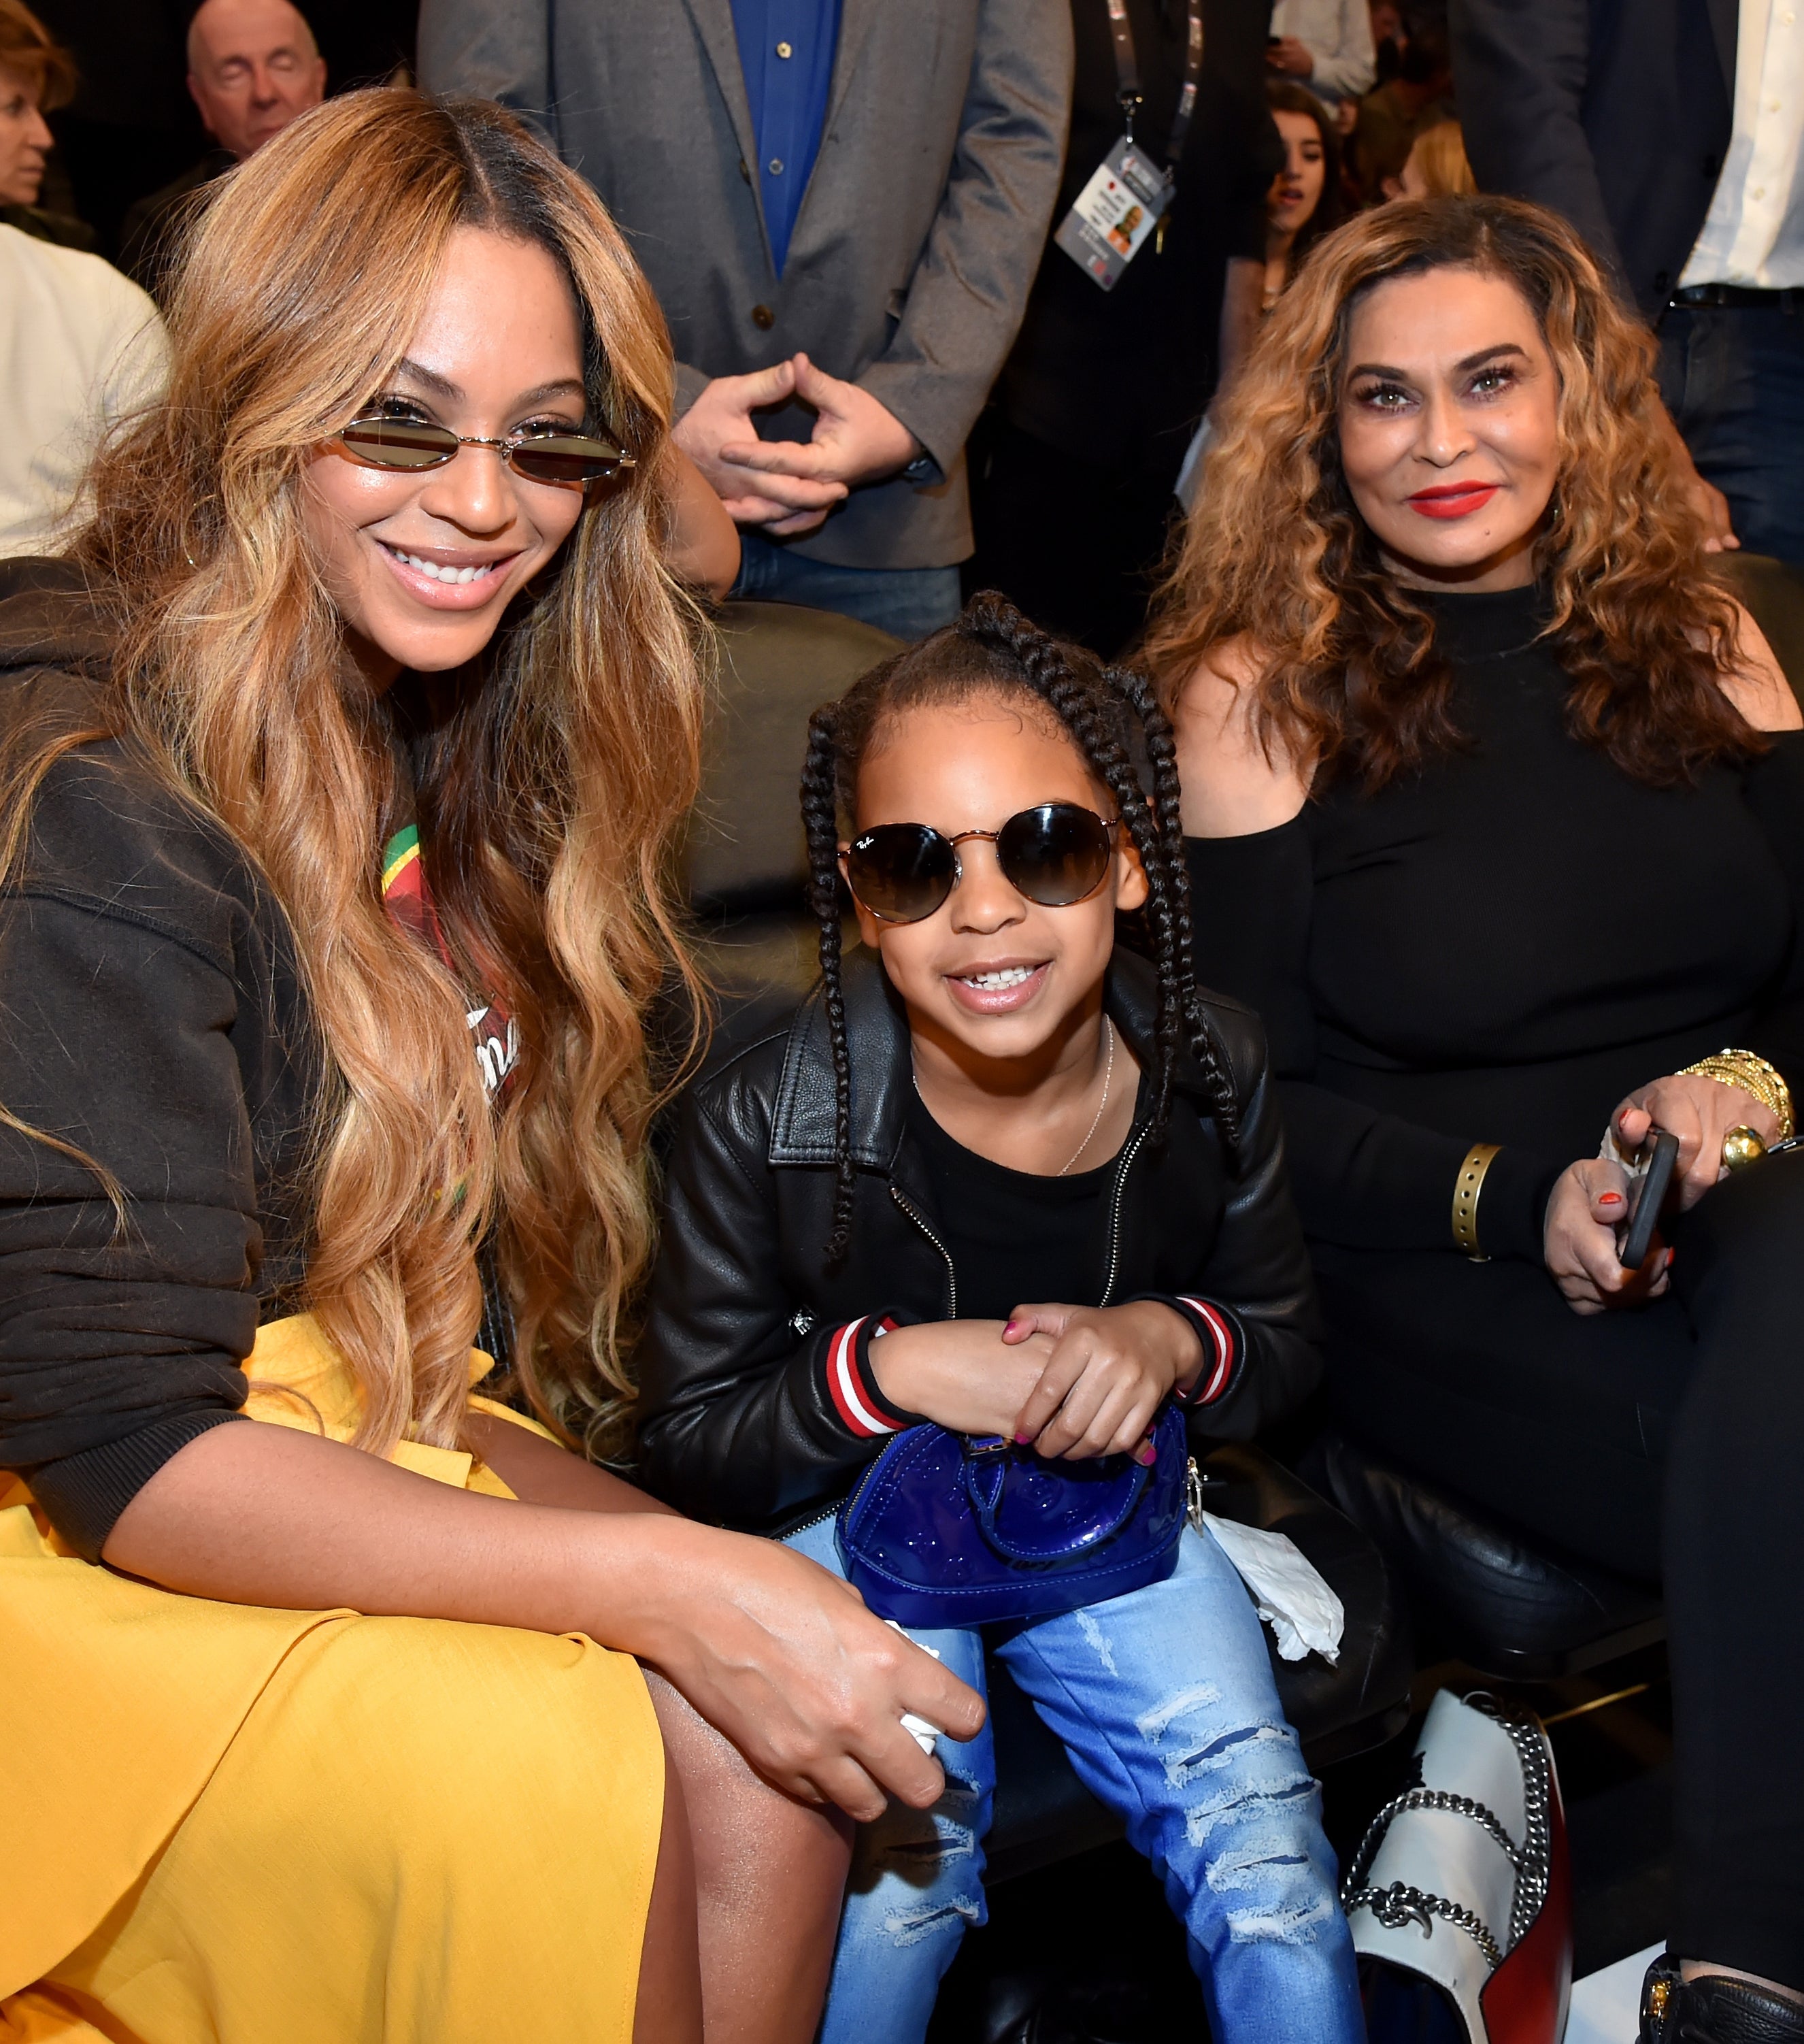 Beyoncé, Blue Ivy, and Tina sitting together